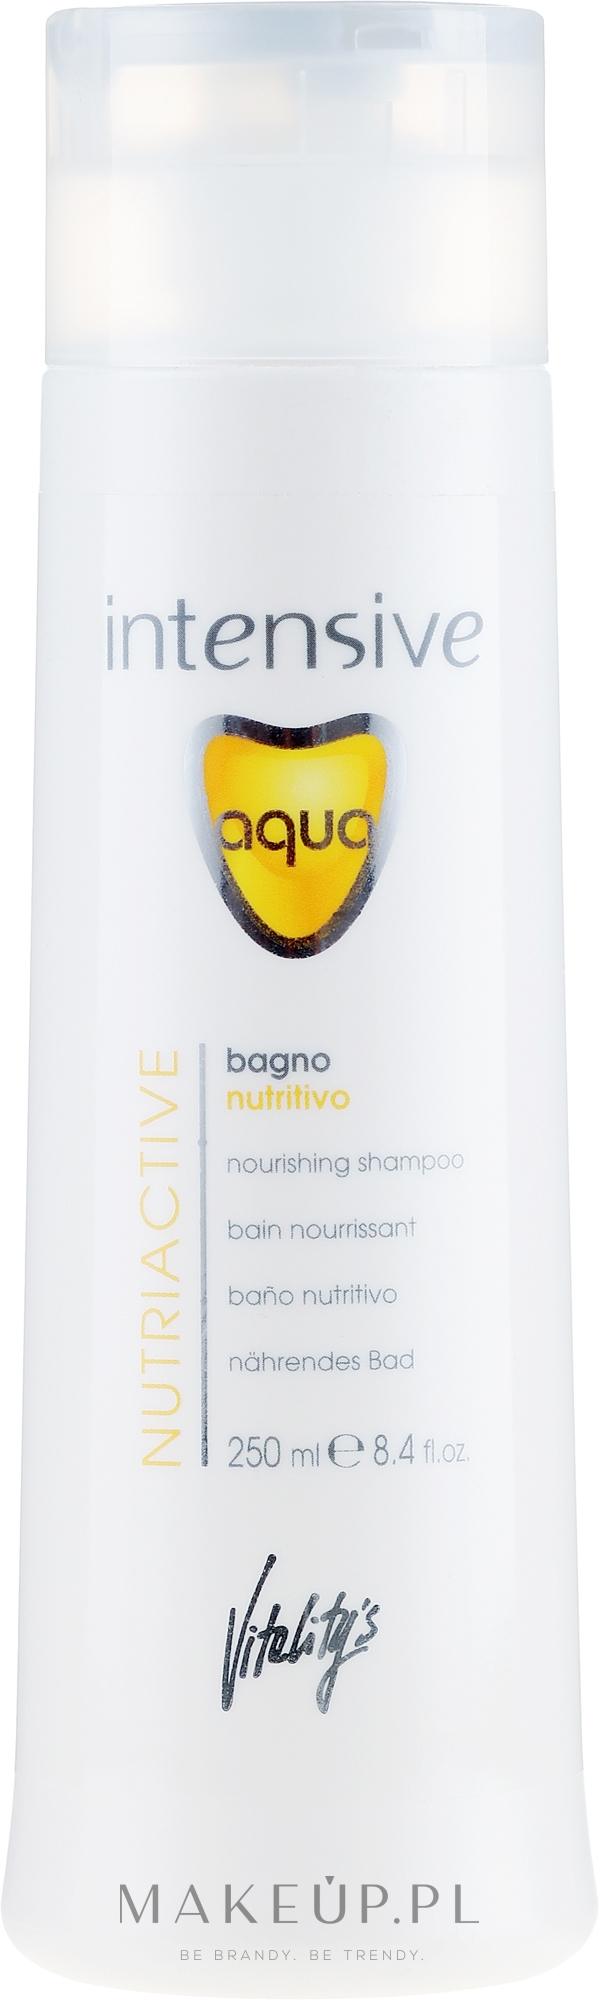 Odżywczy szampon do włosów suchych - Vitality’s Intensive Aqua Nourishing Shampoo — Zdjęcie 250 ml